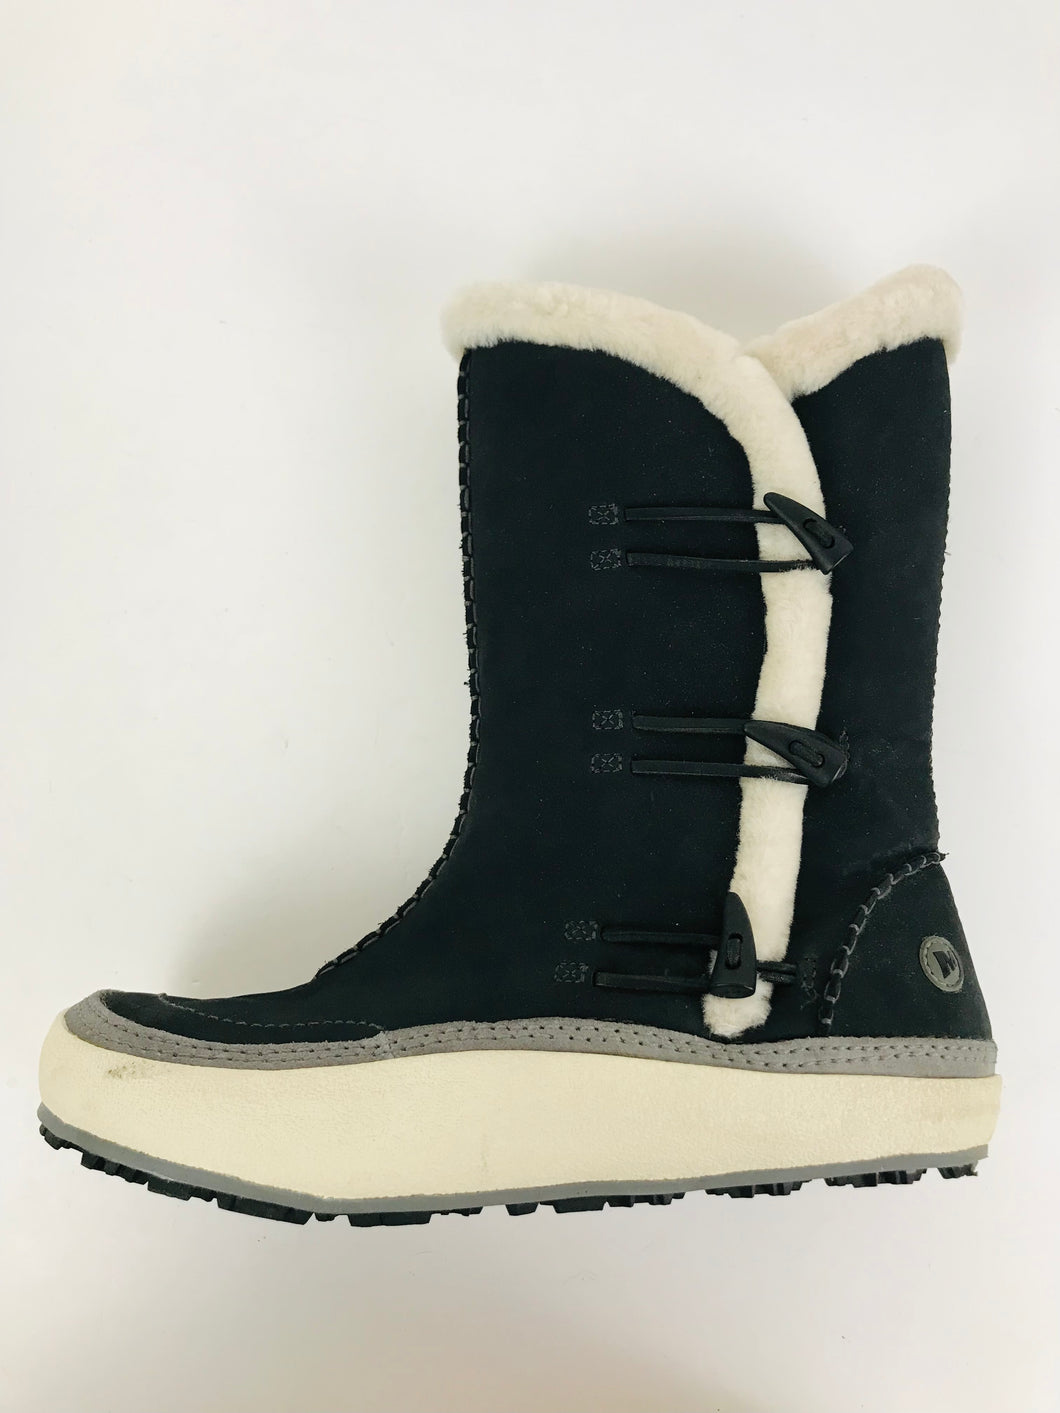 Merrell Women's High Winter Boots | EU42 UK9 | Grey